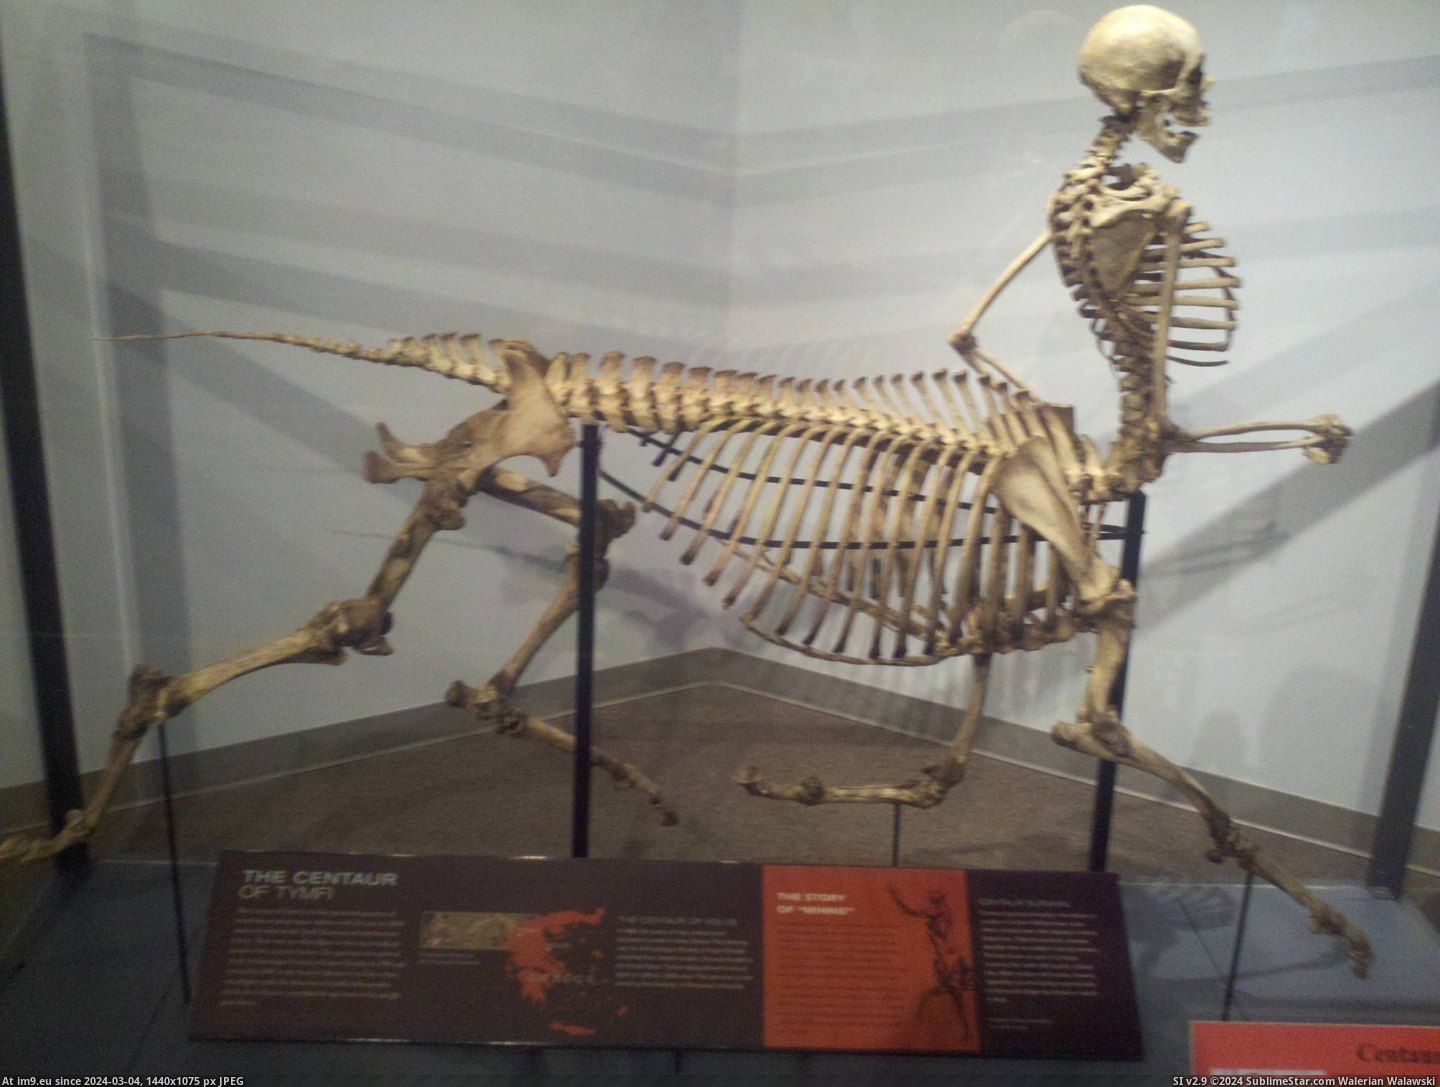 #Life #Museum #Skeleton #Centaur #Local #Wild [Pics] Centaur skeleton at my local wild life museum. Pic. (Bild von album My r/PICS favs))